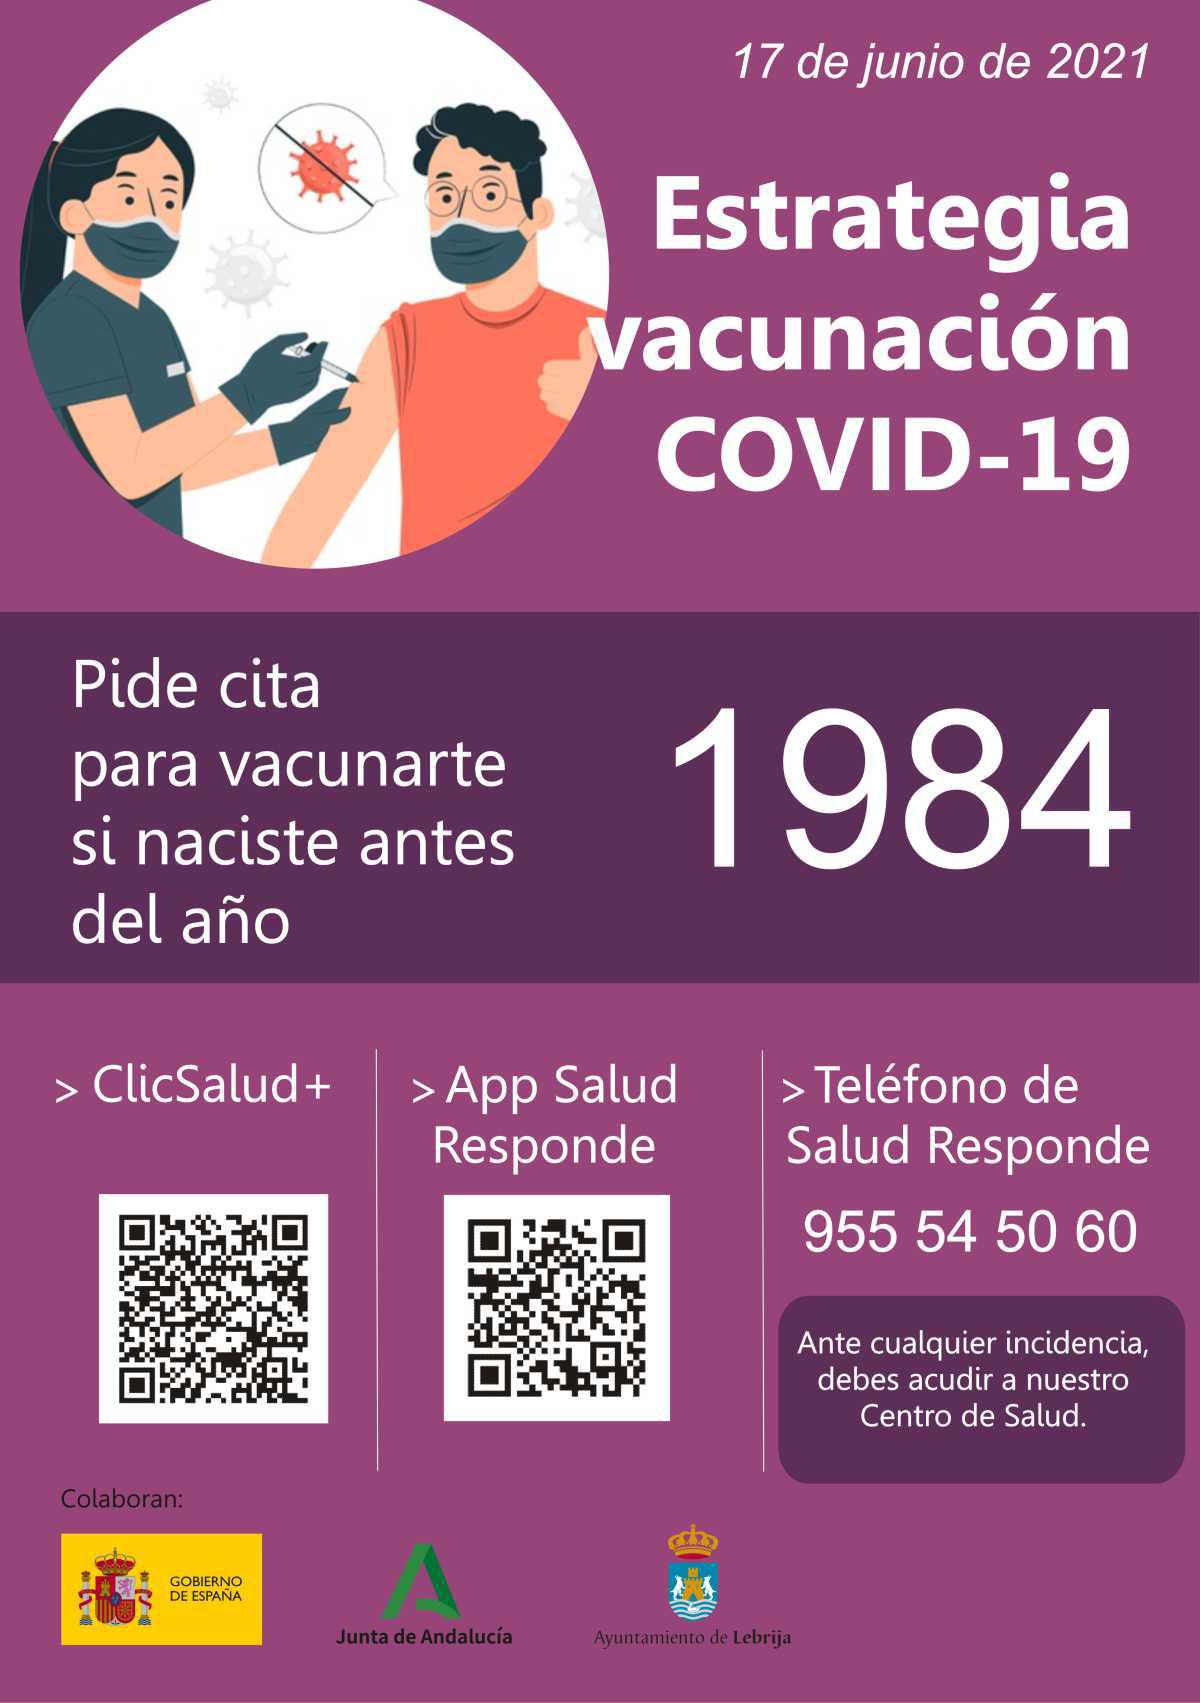 Disponible la solicitud de cita para vacunación COVID-19 para personas nacidas en 1983 y 1984